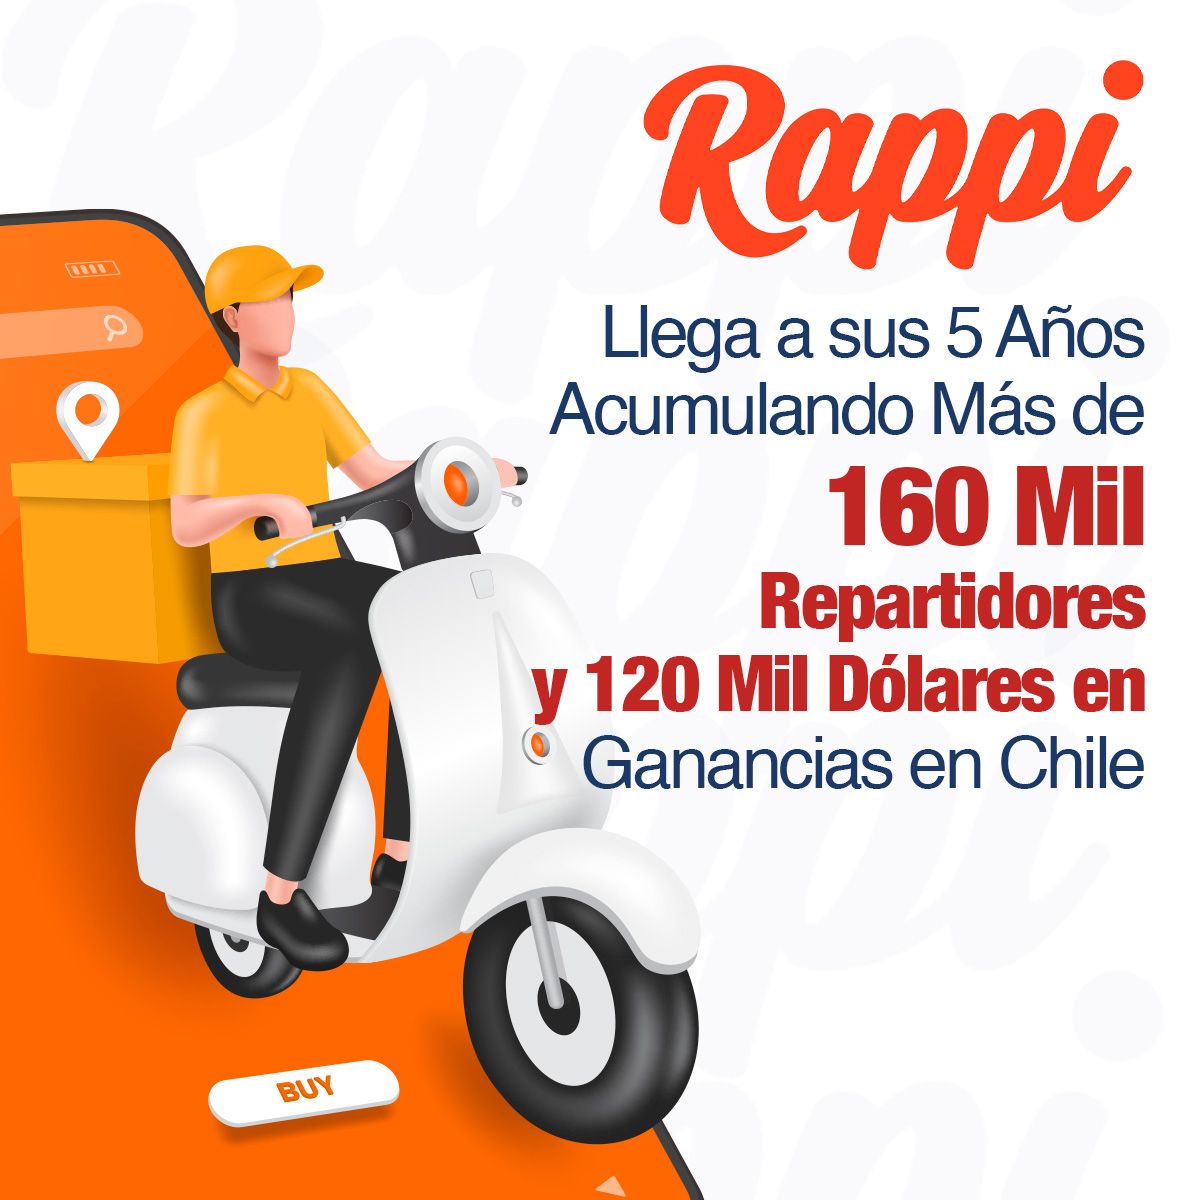 Rappi Llega a sus 5 Años Acumulando Más de 160 Mil Repartidores y 120 Mil Dólares en Ganancias en Chile